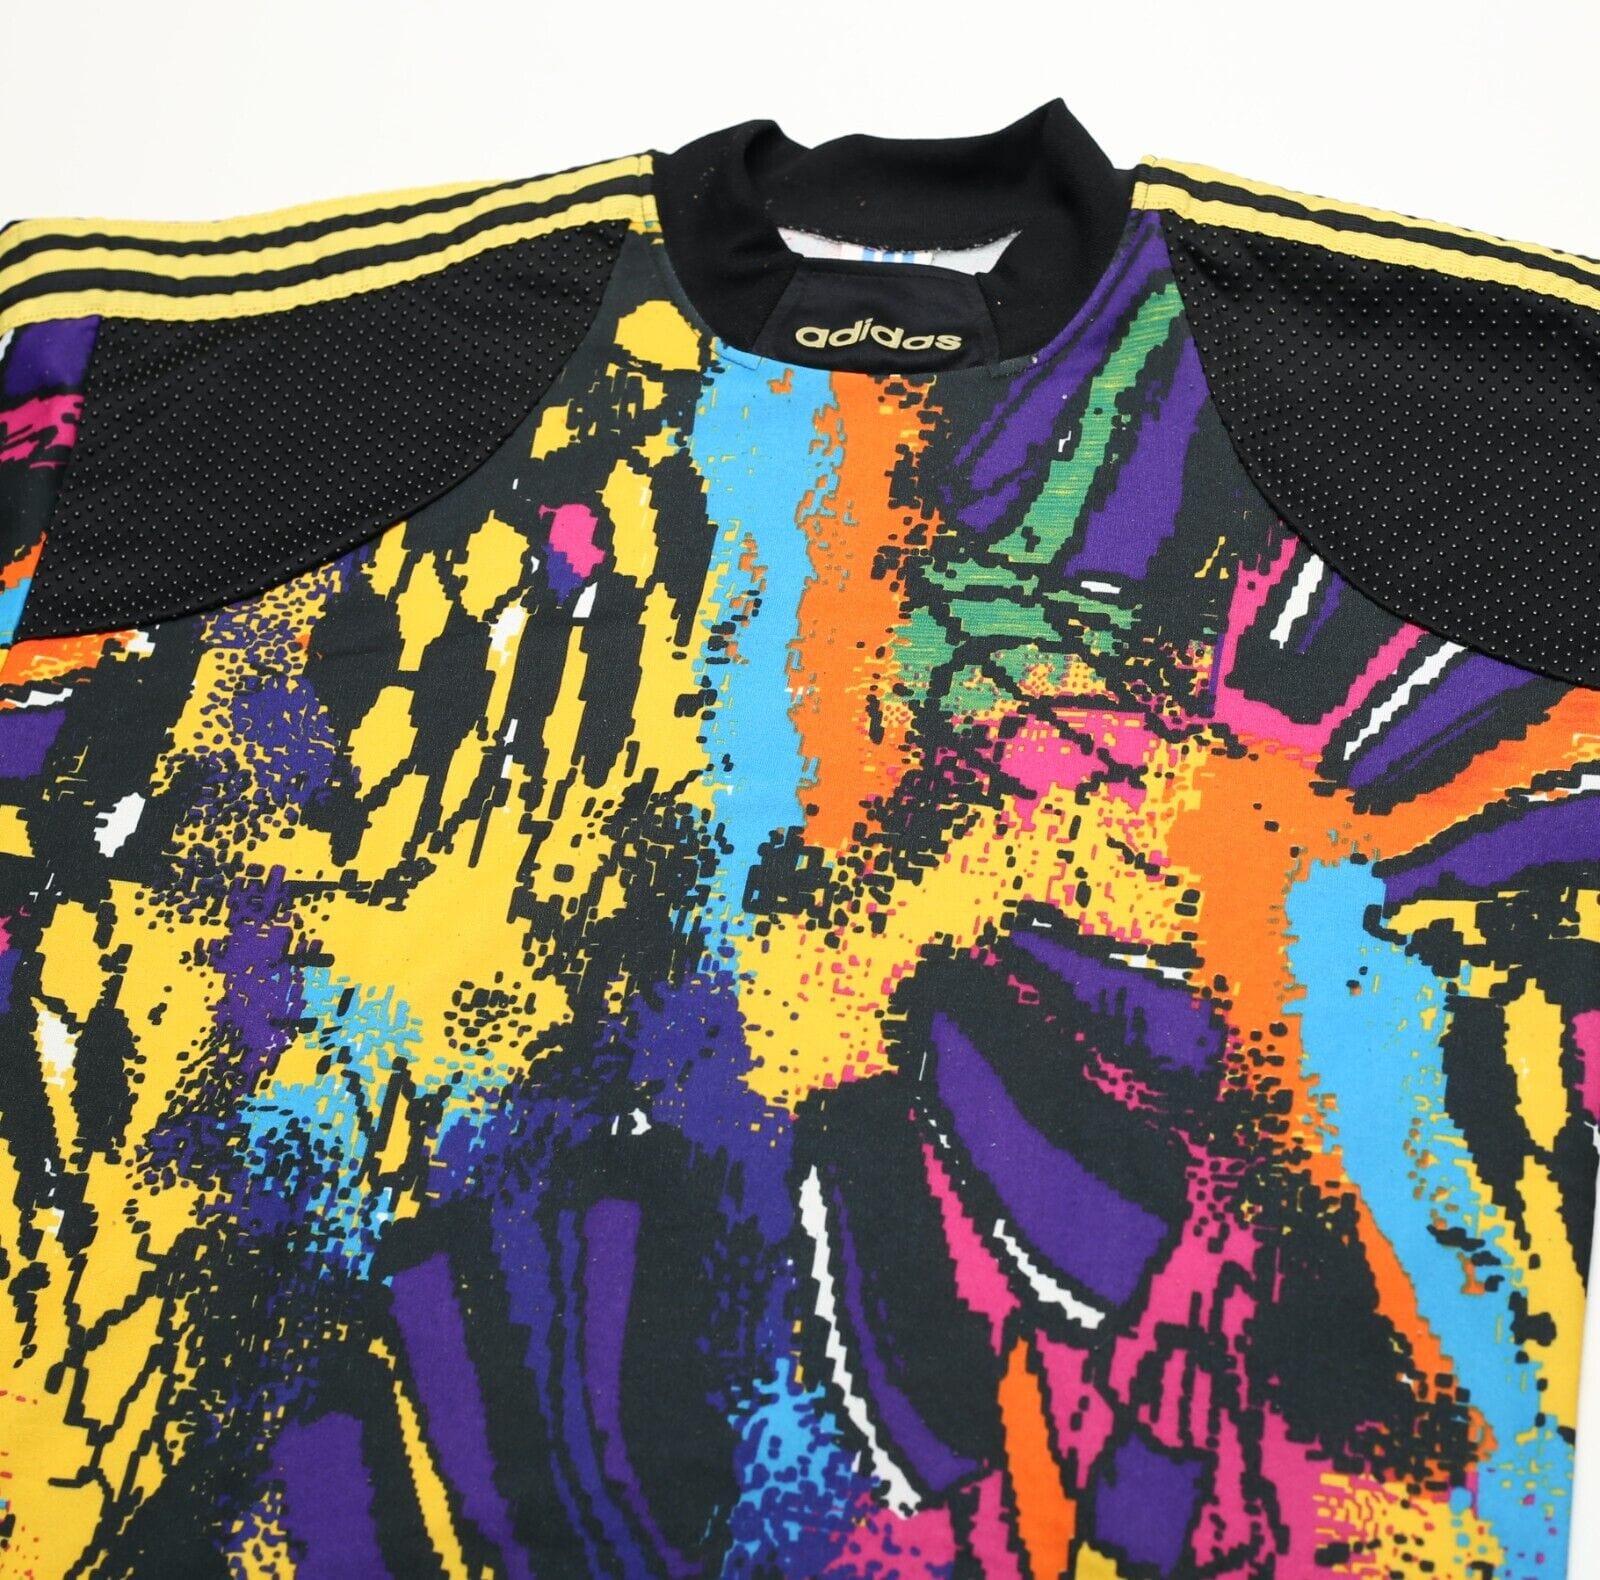 1992-93 adidas Template Goalkeeper Shirt #1 M/L